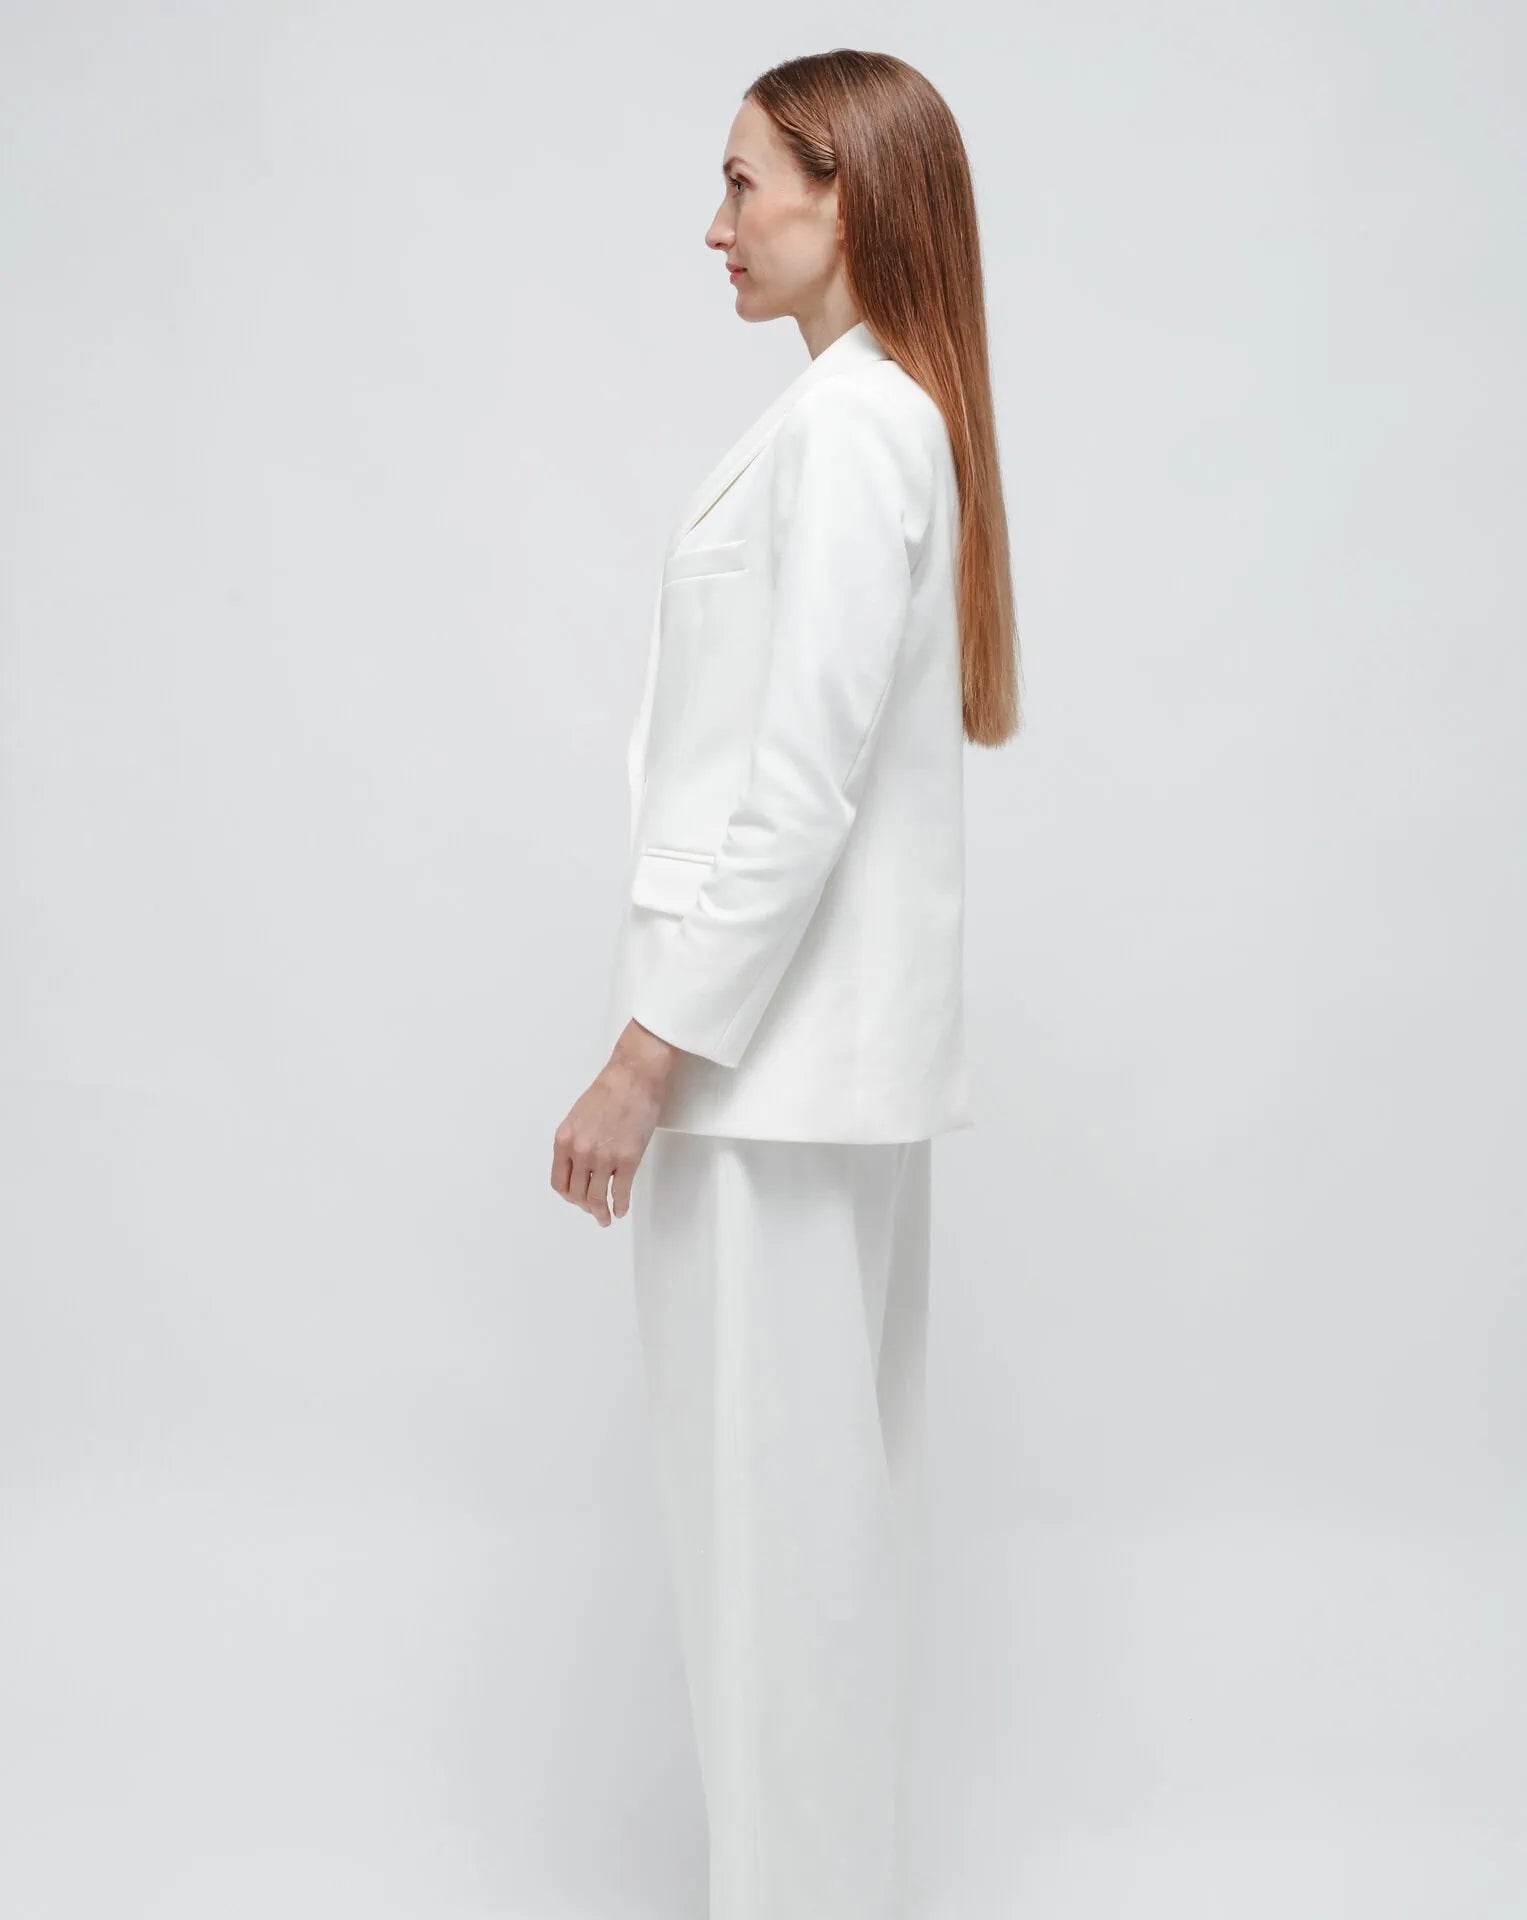 Punto Milano White Jacket